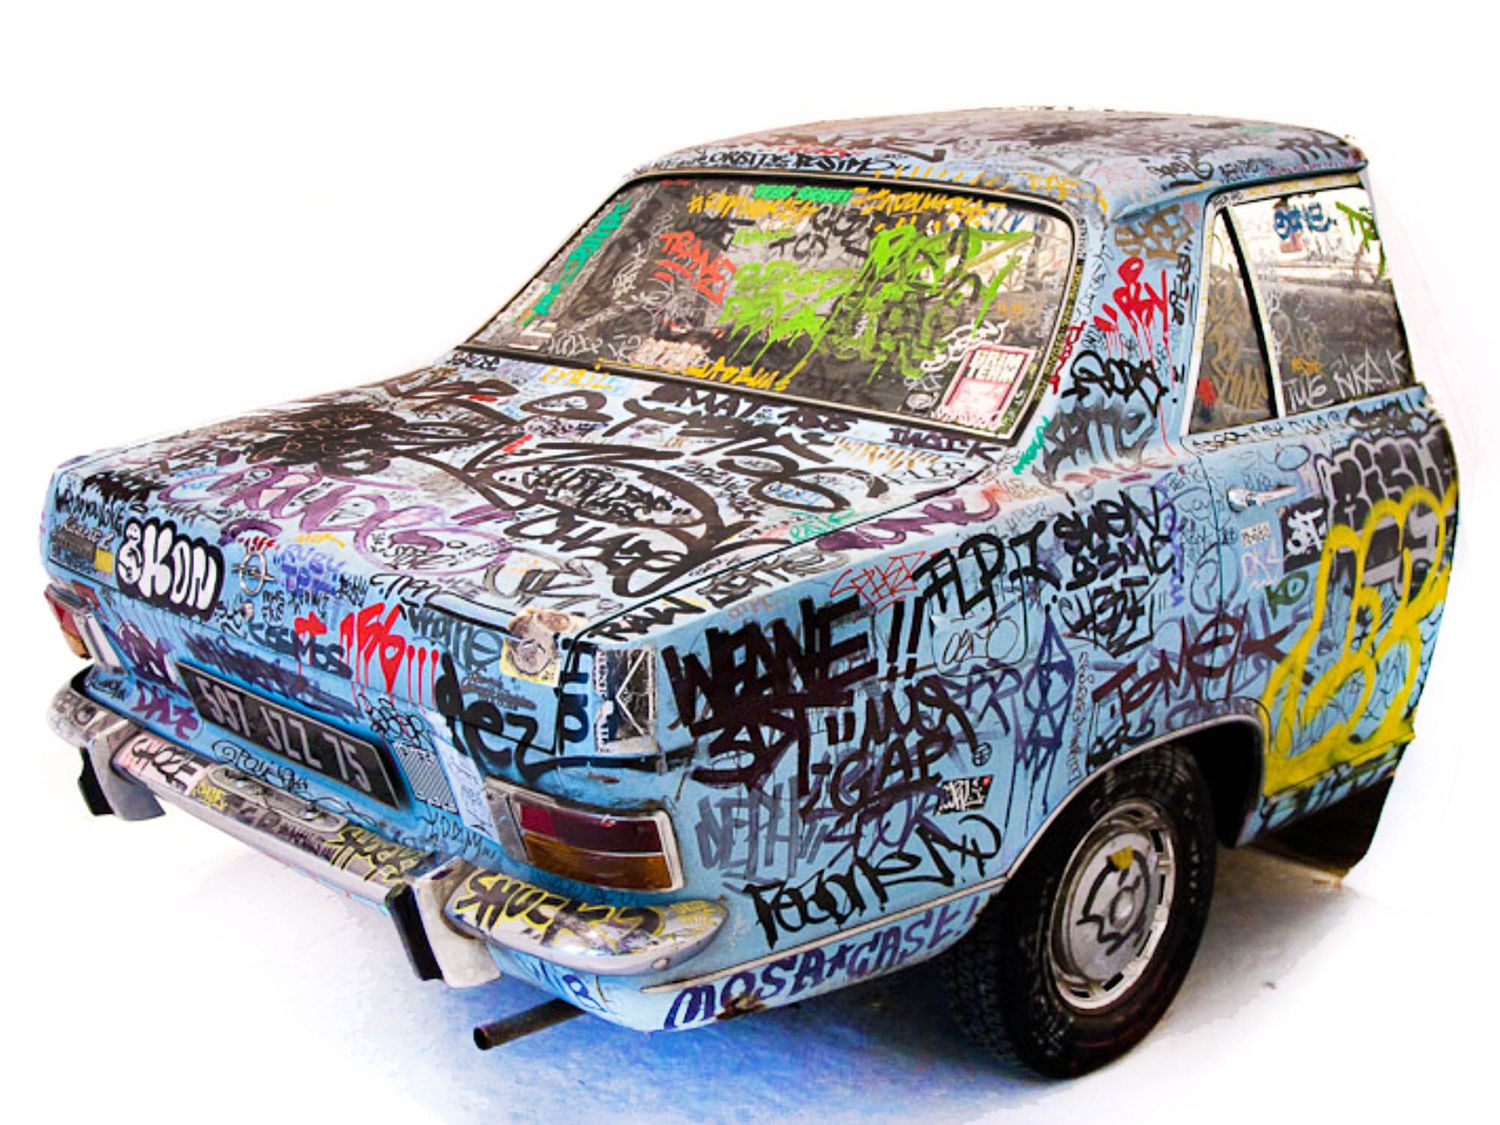 Photographie de l’œuvre d’Ikon lors de l’exposition "Graffiti, état des lieux" qui a eu lieu dans la Galerie du Jour d’Agnès b. en 2009, une grande réussite qui regroupa 30 artistes (©Lionel Belluteau).